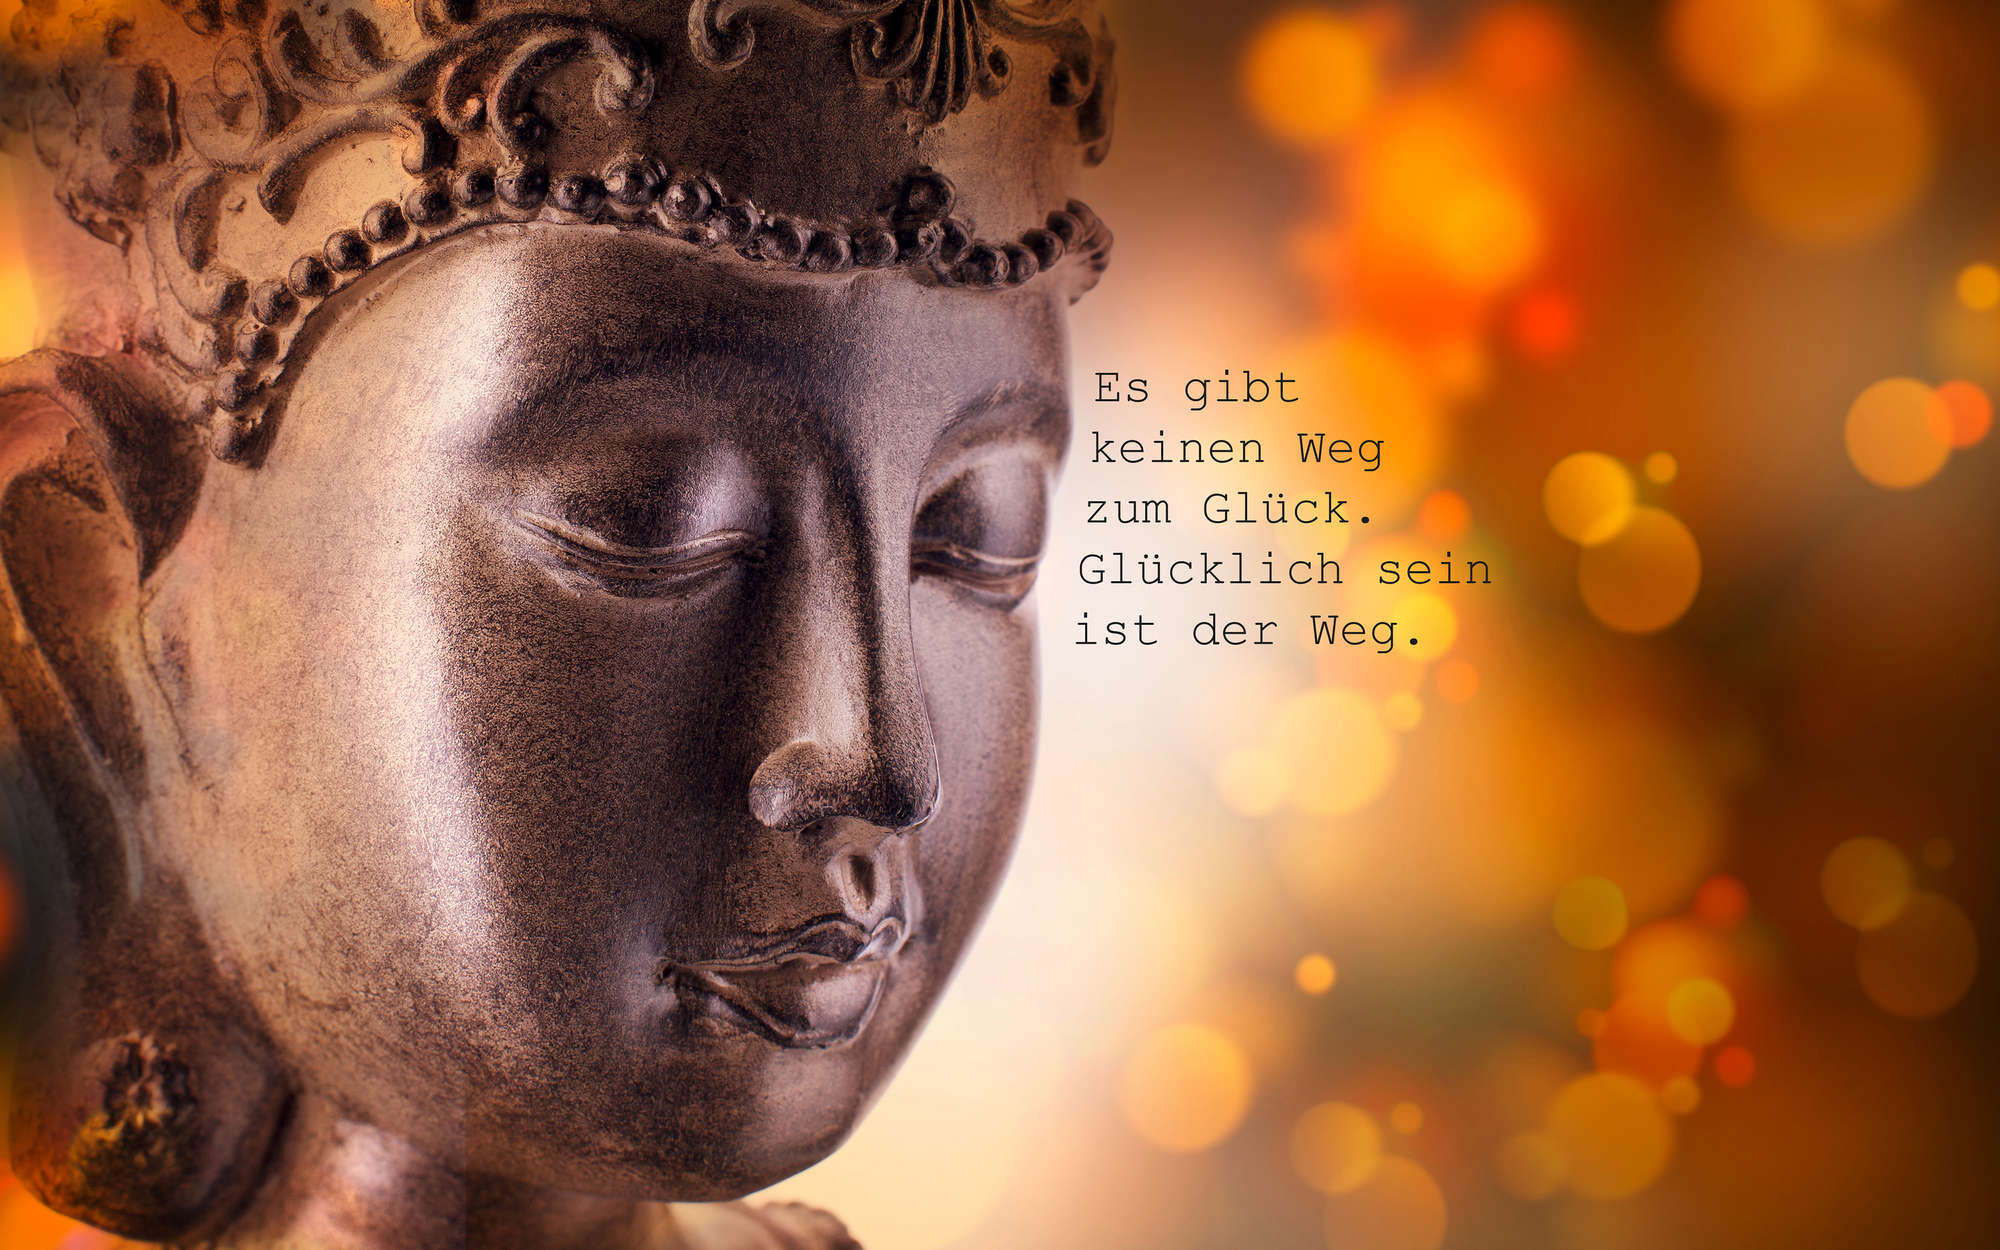             Fotomural Buda con letras de la felicidad - tejido no tejido liso de alta calidad
        